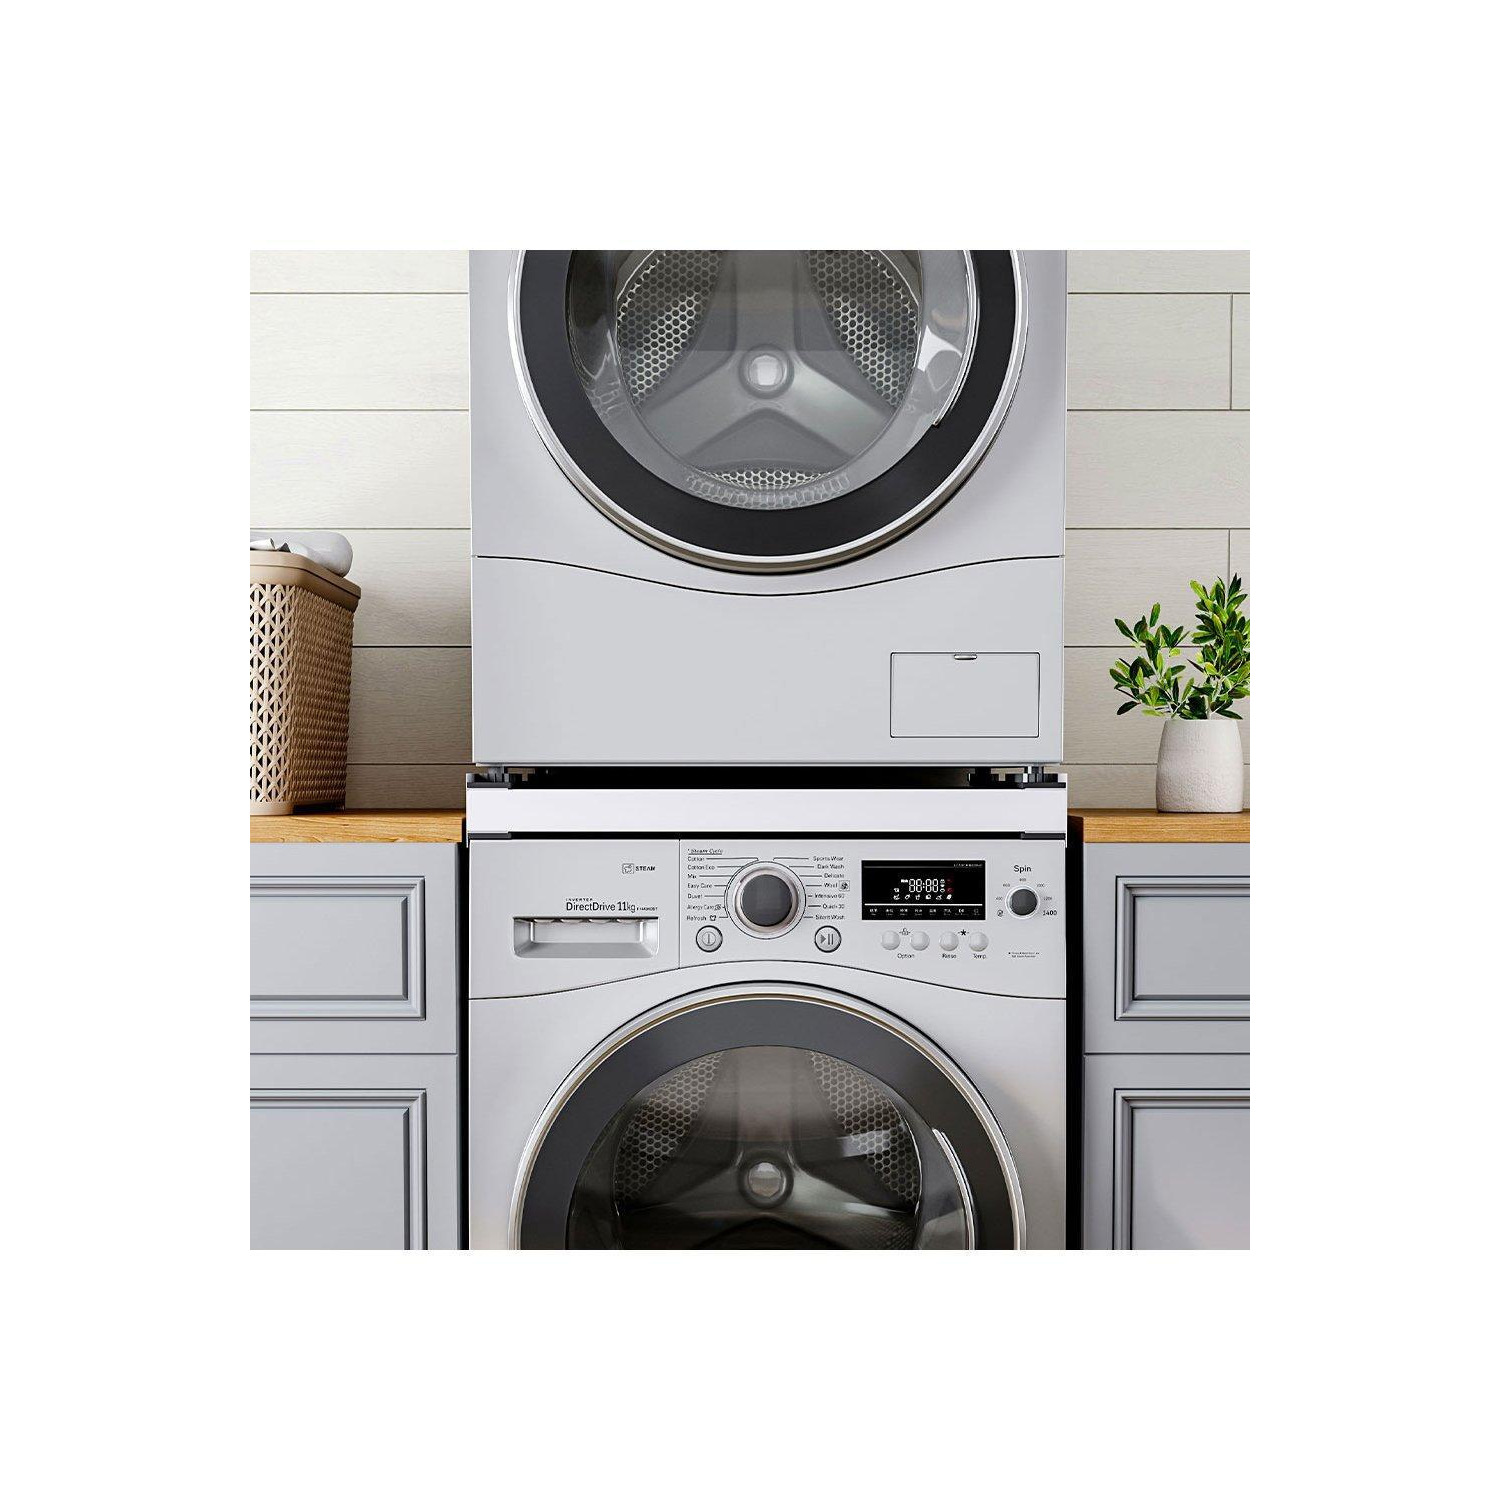 Washing Machine Dryer Pedestal - image 1